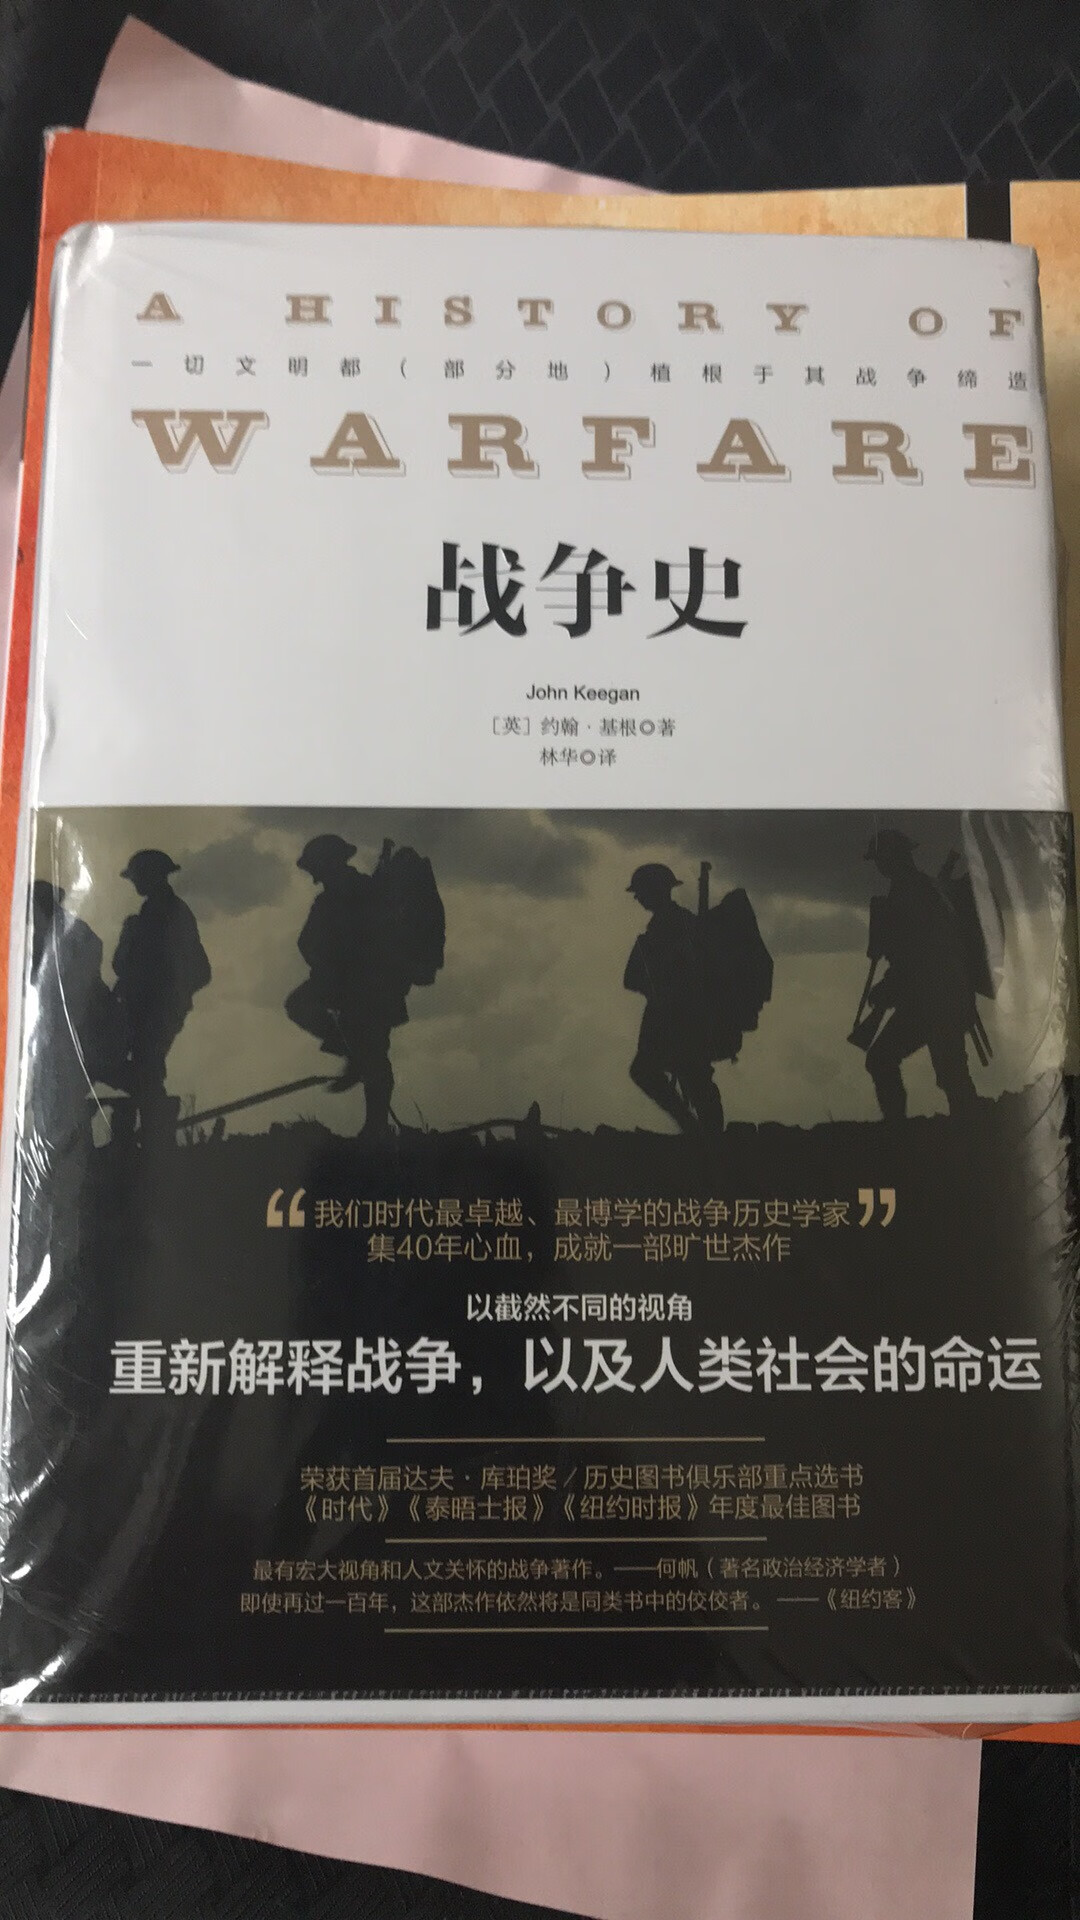 这是一部重新解释战争的军事史学图书，从不同的角度阐释了涉及人类命运的战争问题，可谓别具一格。